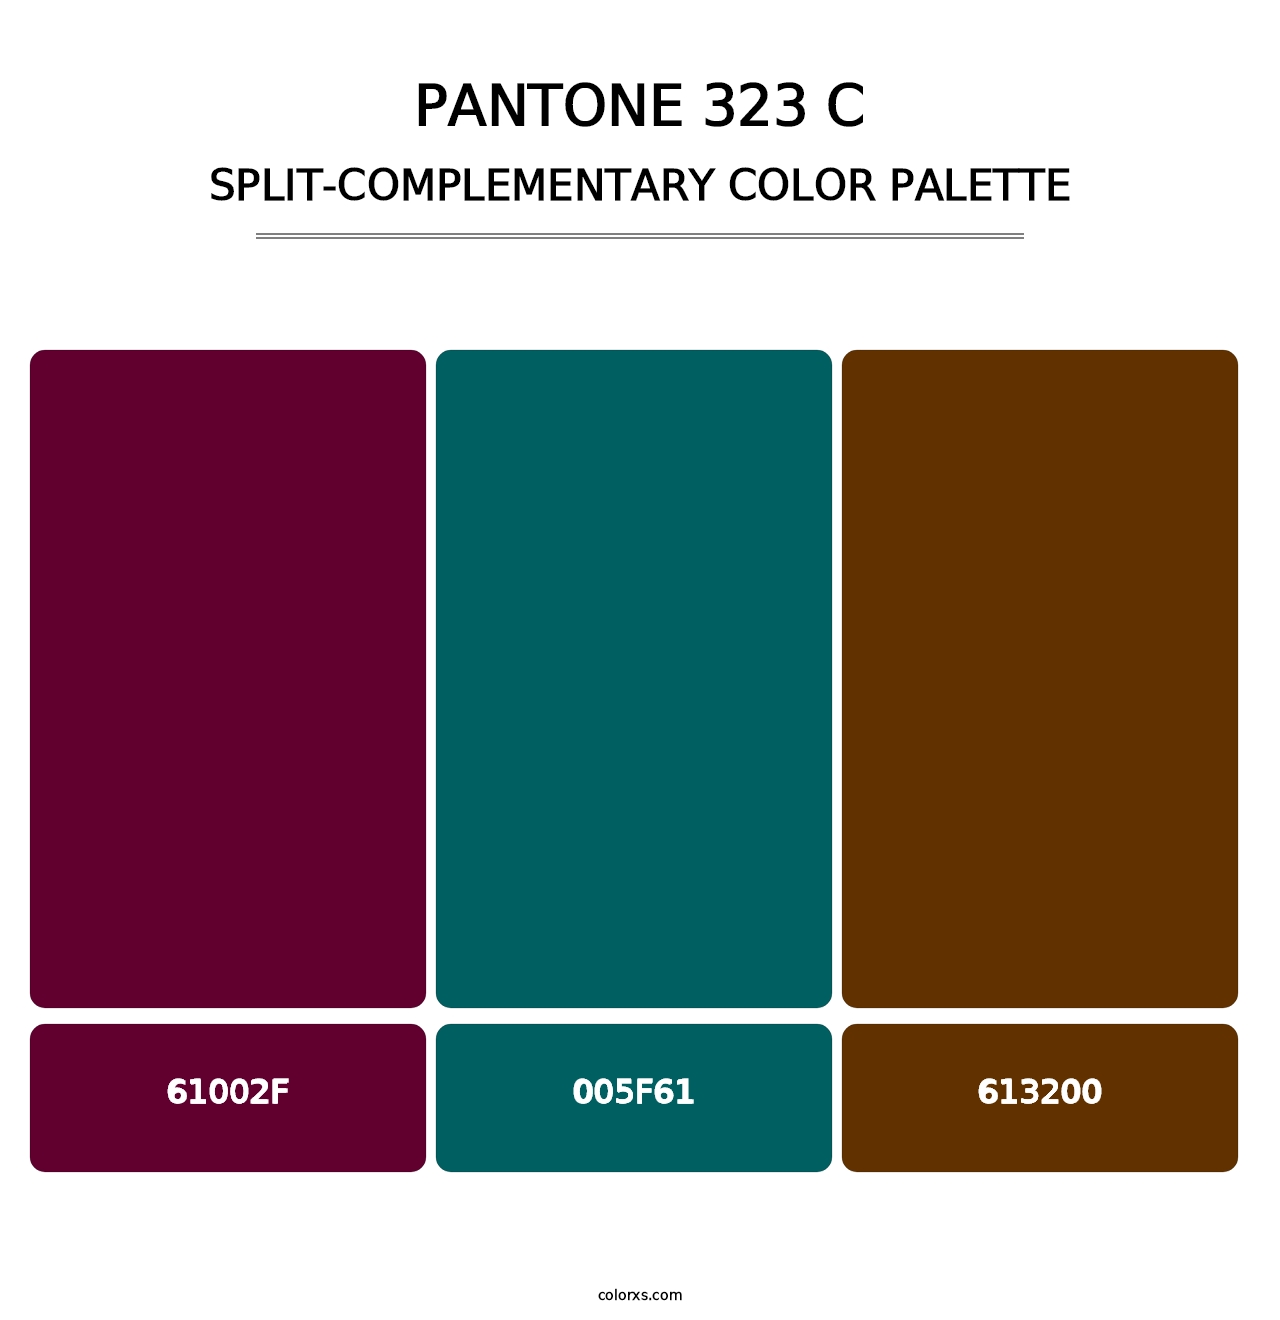 PANTONE 323 C - Split-Complementary Color Palette